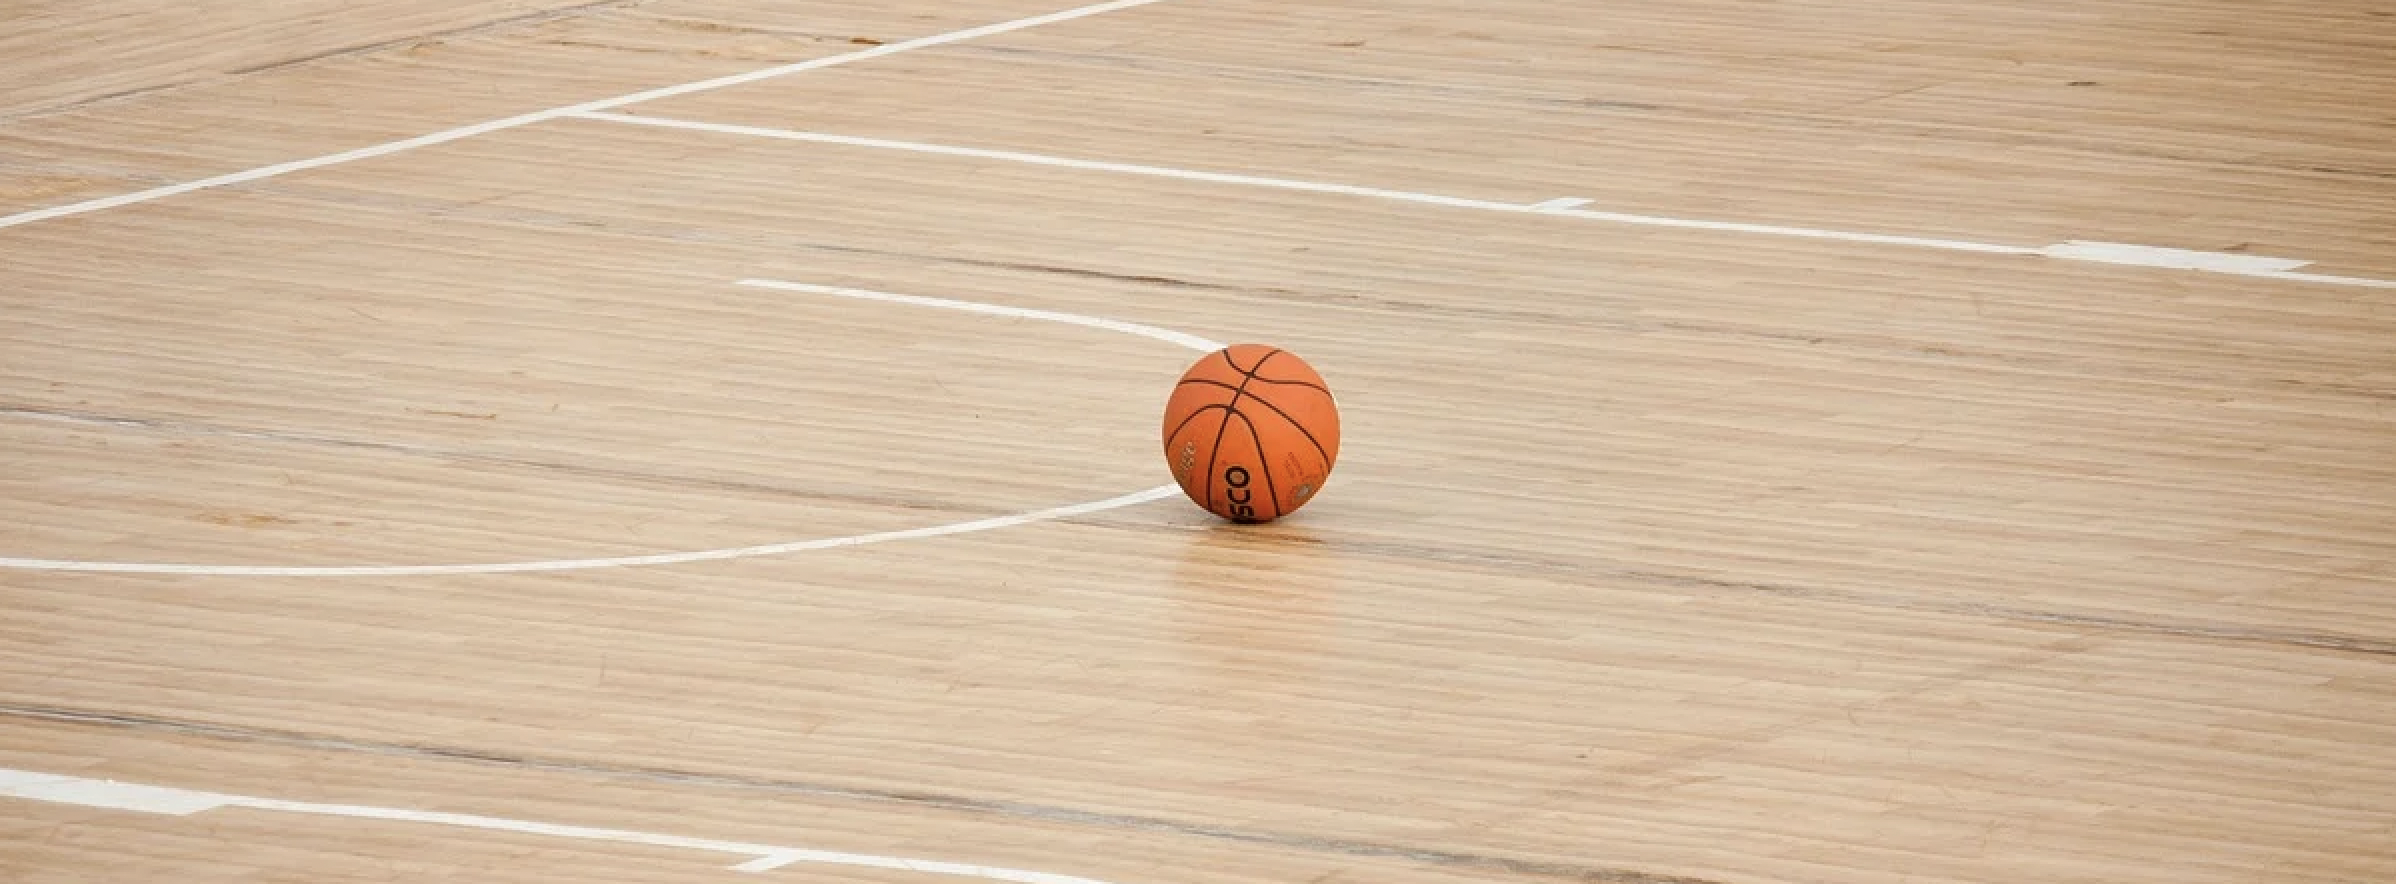 Сборная РЭУ по баскетболу сыграет в квалификационном турнире. Фото: pixabay.com